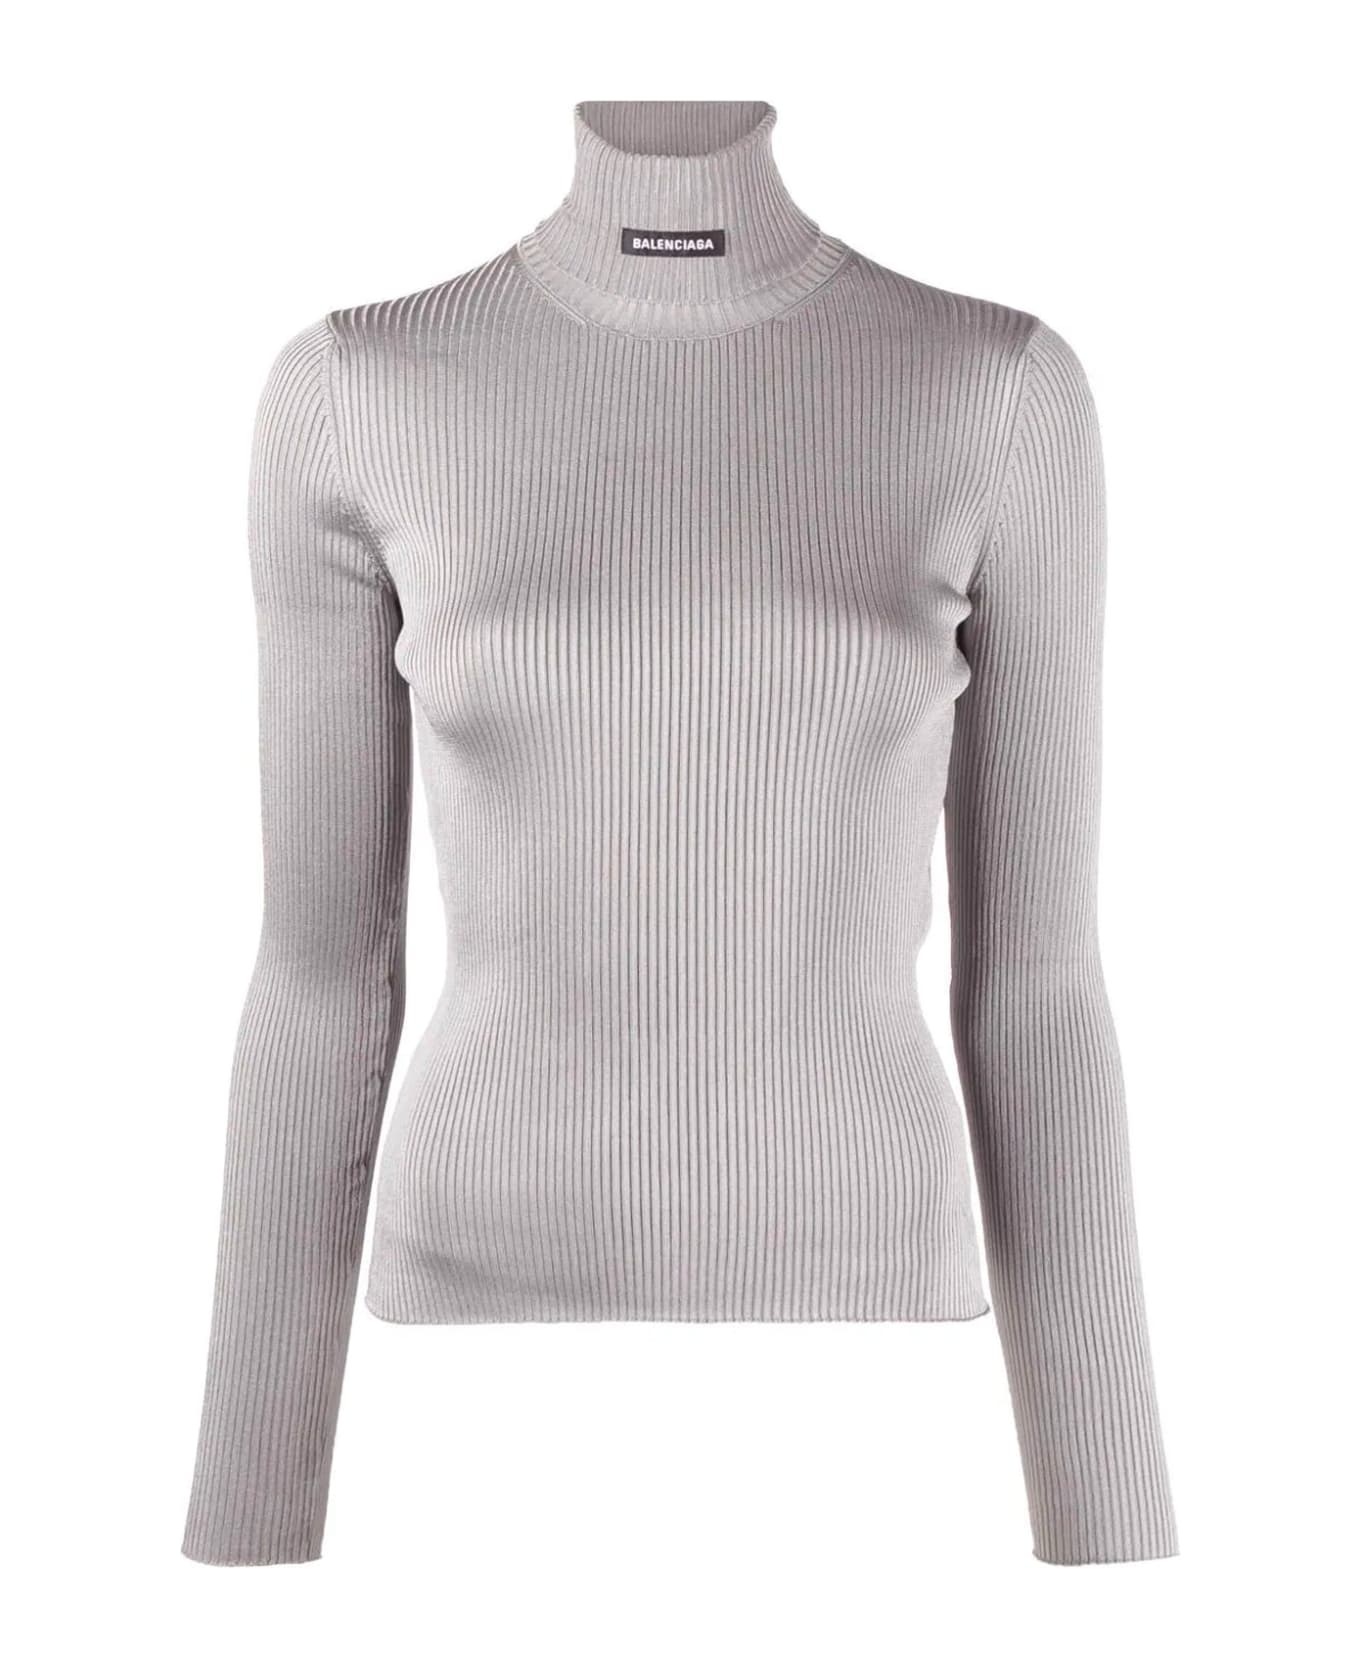 Balenciaga Ribbed Turtleneck Sweater - Gray ニットウェア